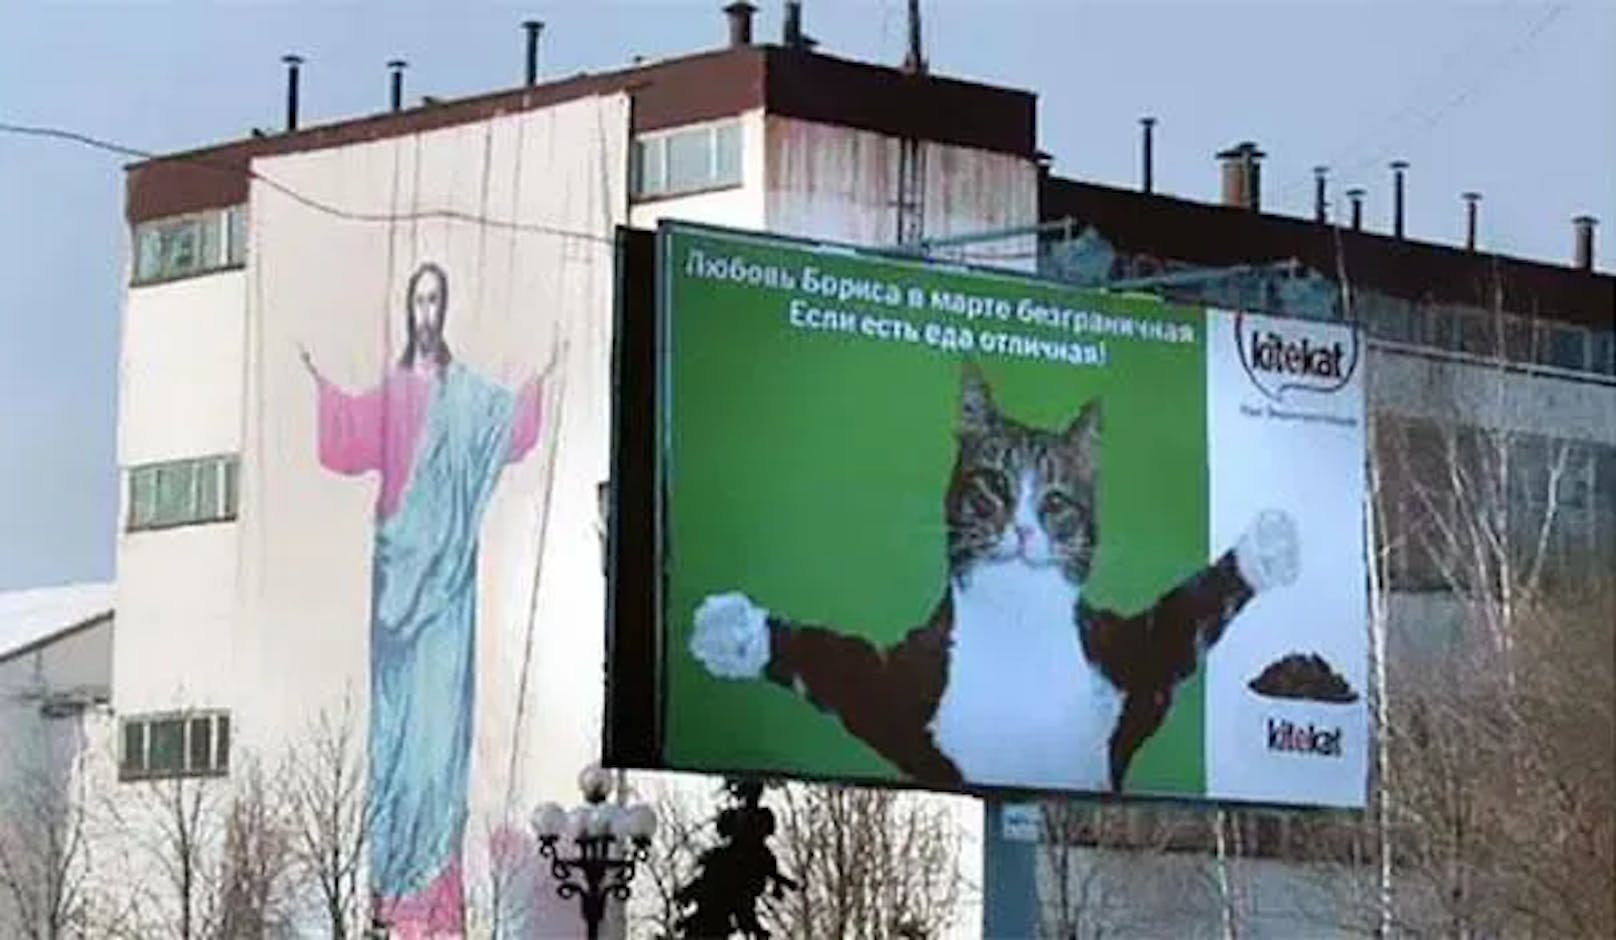 Rechts befindet sich eine Werbung für Katzenfutter. Nur sieht die Katze ein bisschen sehr danach aus, als würde sie Jesus Christus auf der linken Seite imitieren …